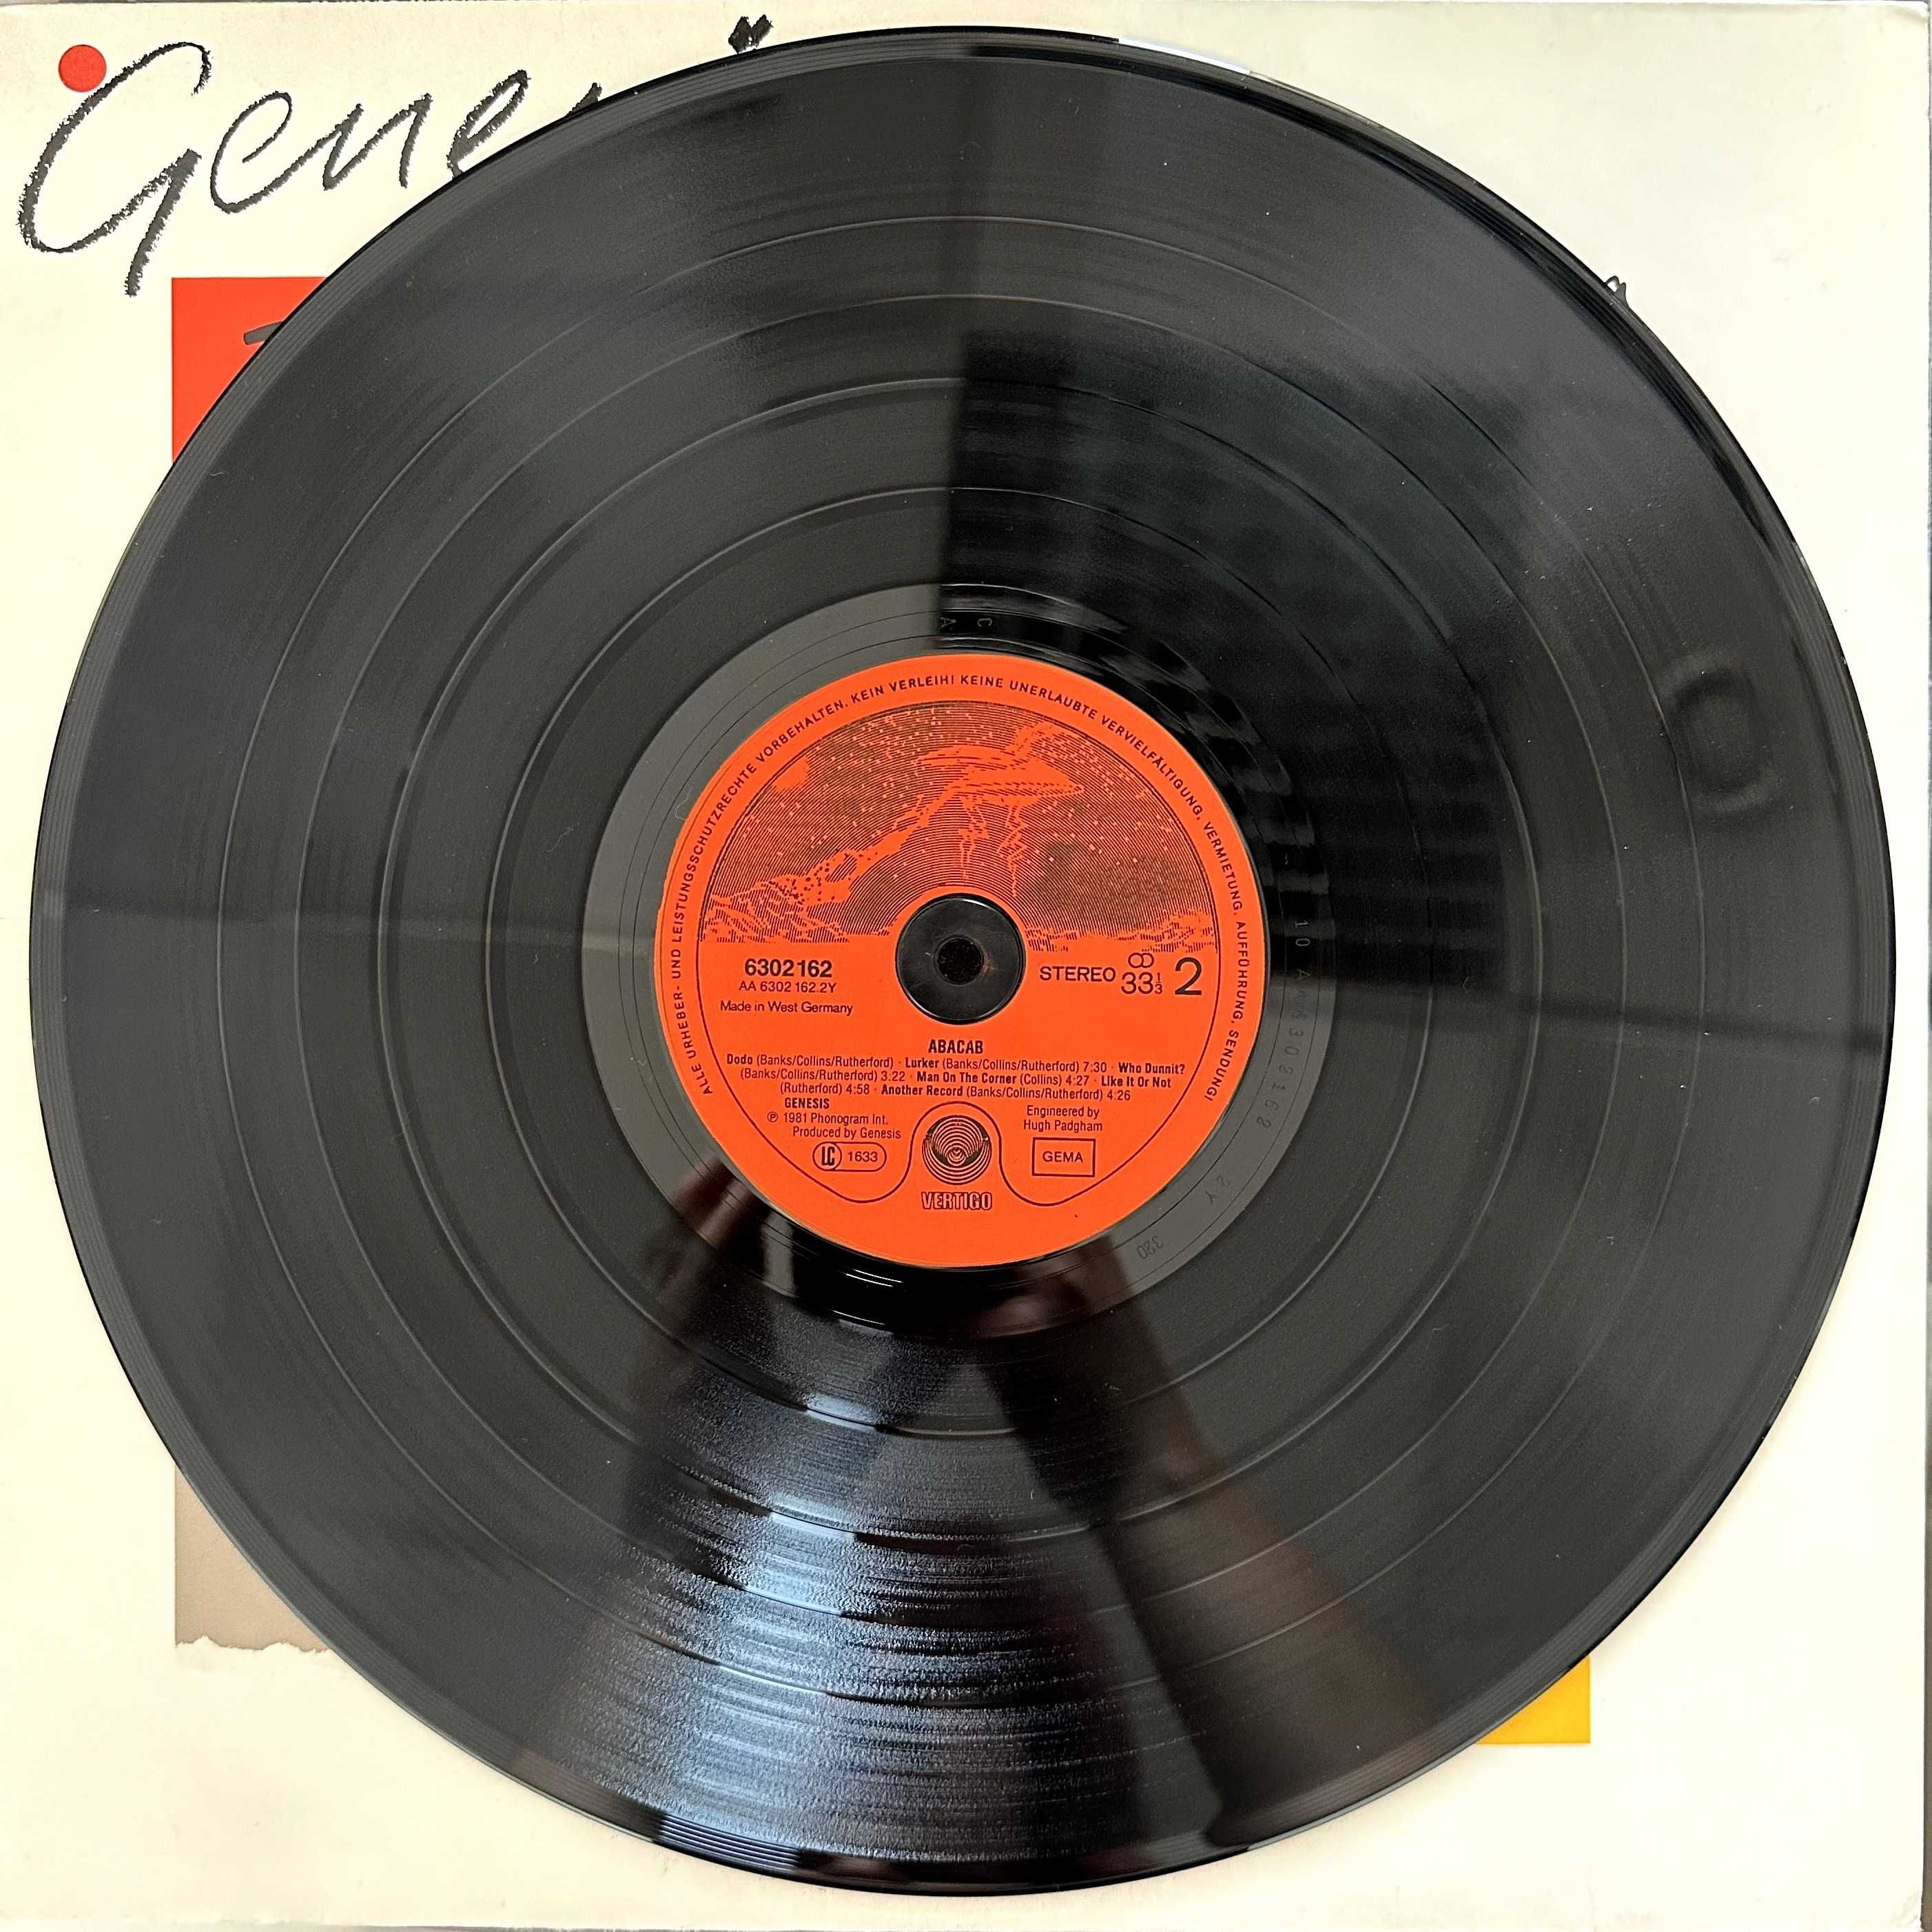 Genesis - abacab (Vinyl, 1981, Germany)